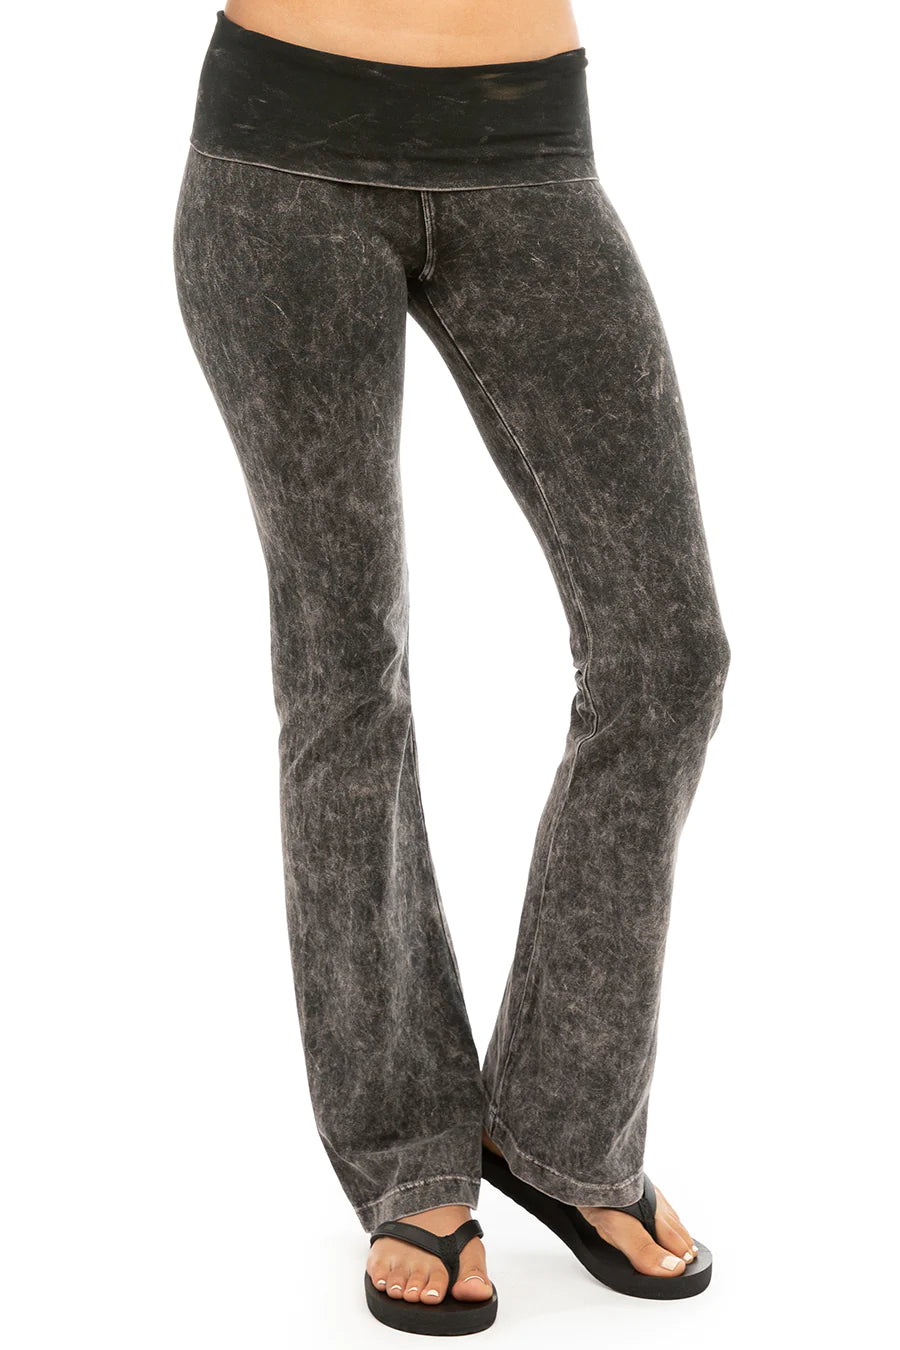 PINK COTTON FOLDOVER FLARE LEGGINGS in 2023  Flare leggings, Black velvet  leggings, Cheetah print leggings